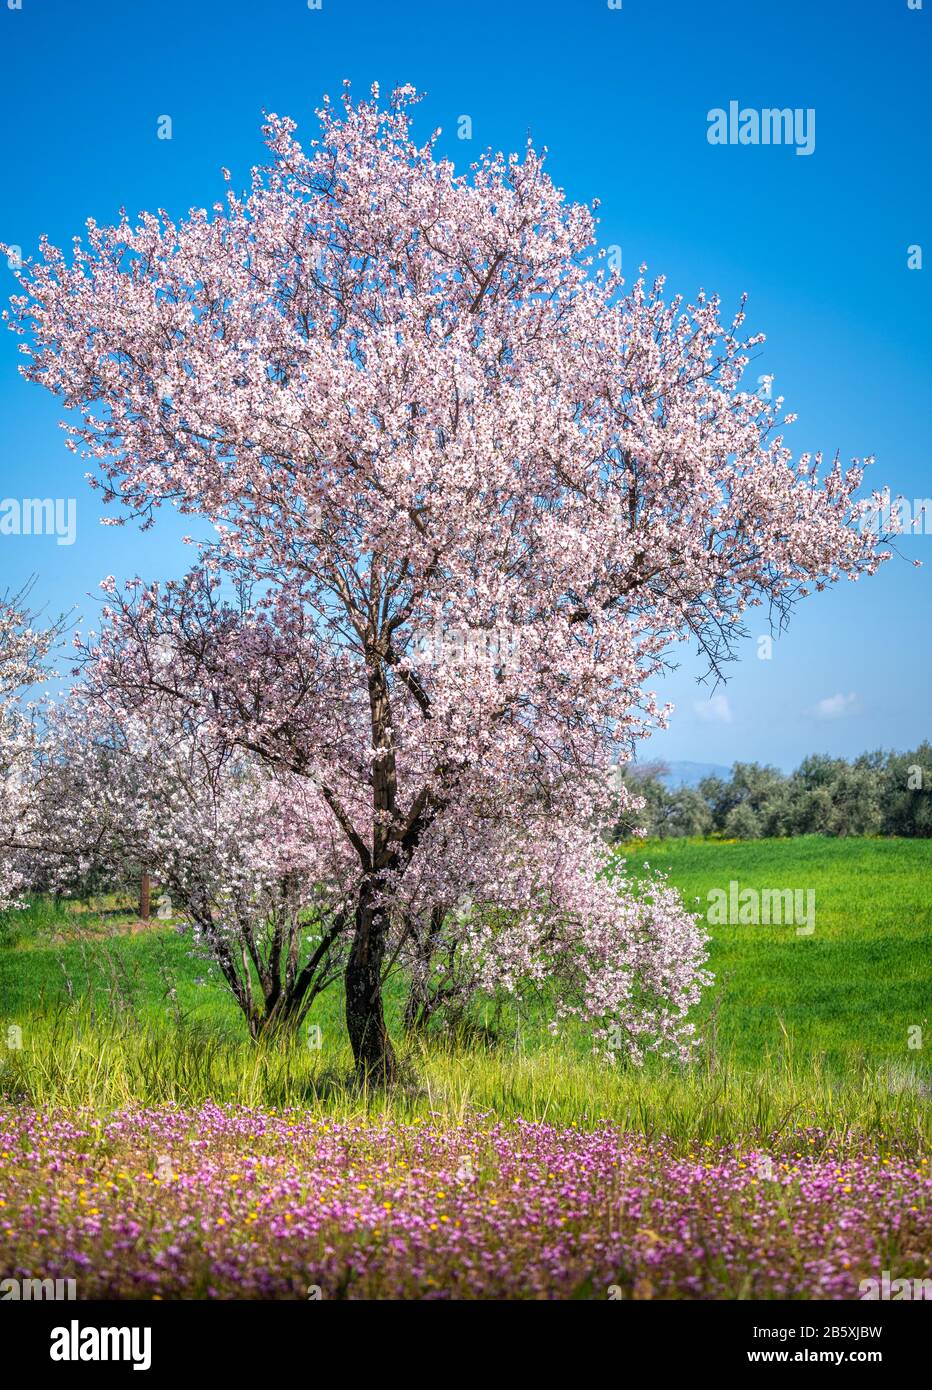 Printemps à Chypre - de beaux arbres en fleurs d'amande dans le village de Klirou près de Nicosie, Chypre Banque D'Images